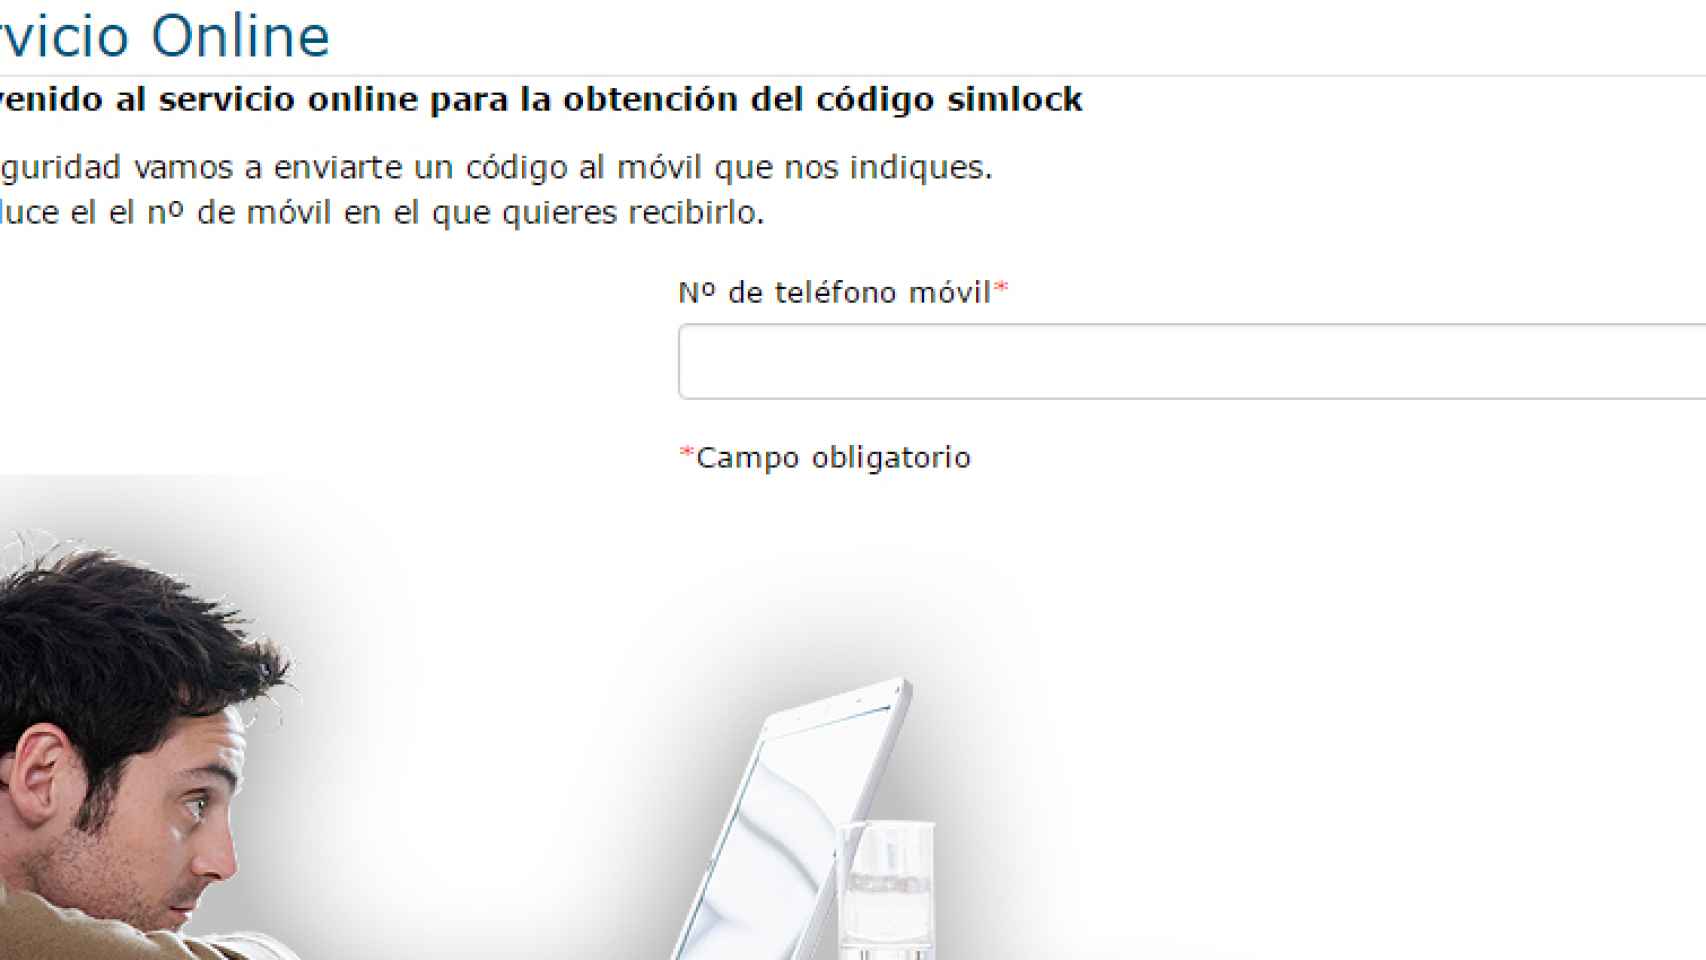 Movistar ya permite liberar el móvil gratis desde su web